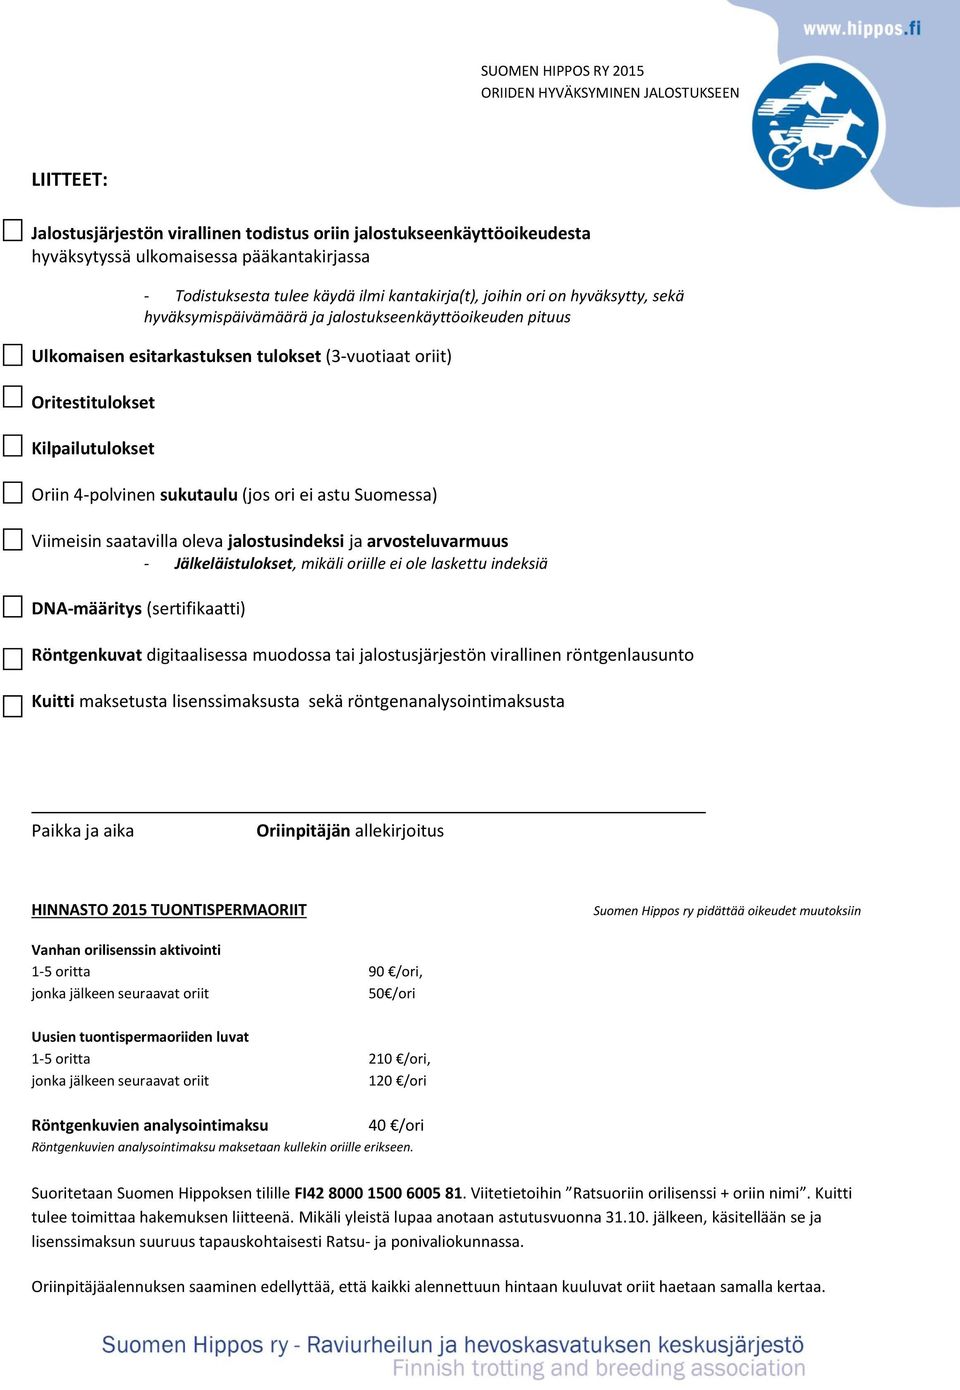 Suomessa) Viimeisin saatavilla oleva jalostusindeksi ja arvosteluvarmuus - Jälkeläistulokset, mikäli oriille ei ole laskettu indeksiä DNA-määritys (sertifikaatti) Röntgenkuvat digitaalisessa muodossa